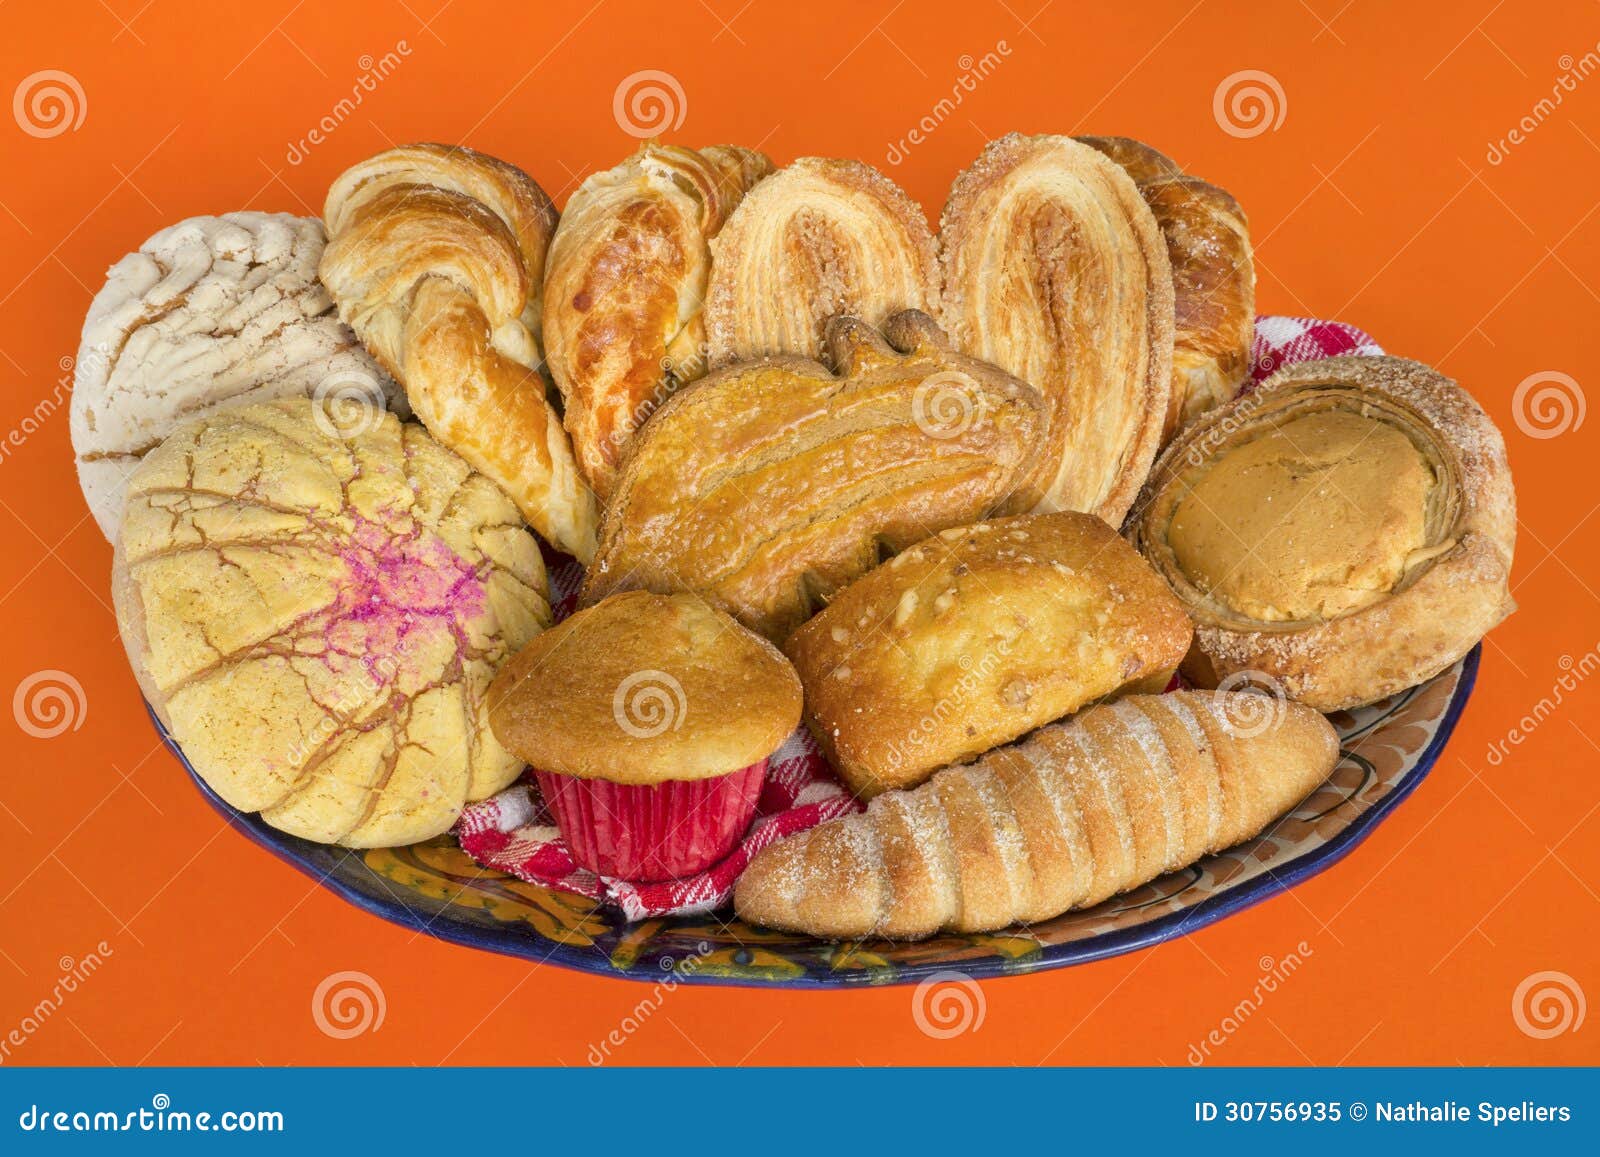 mexican bread basket